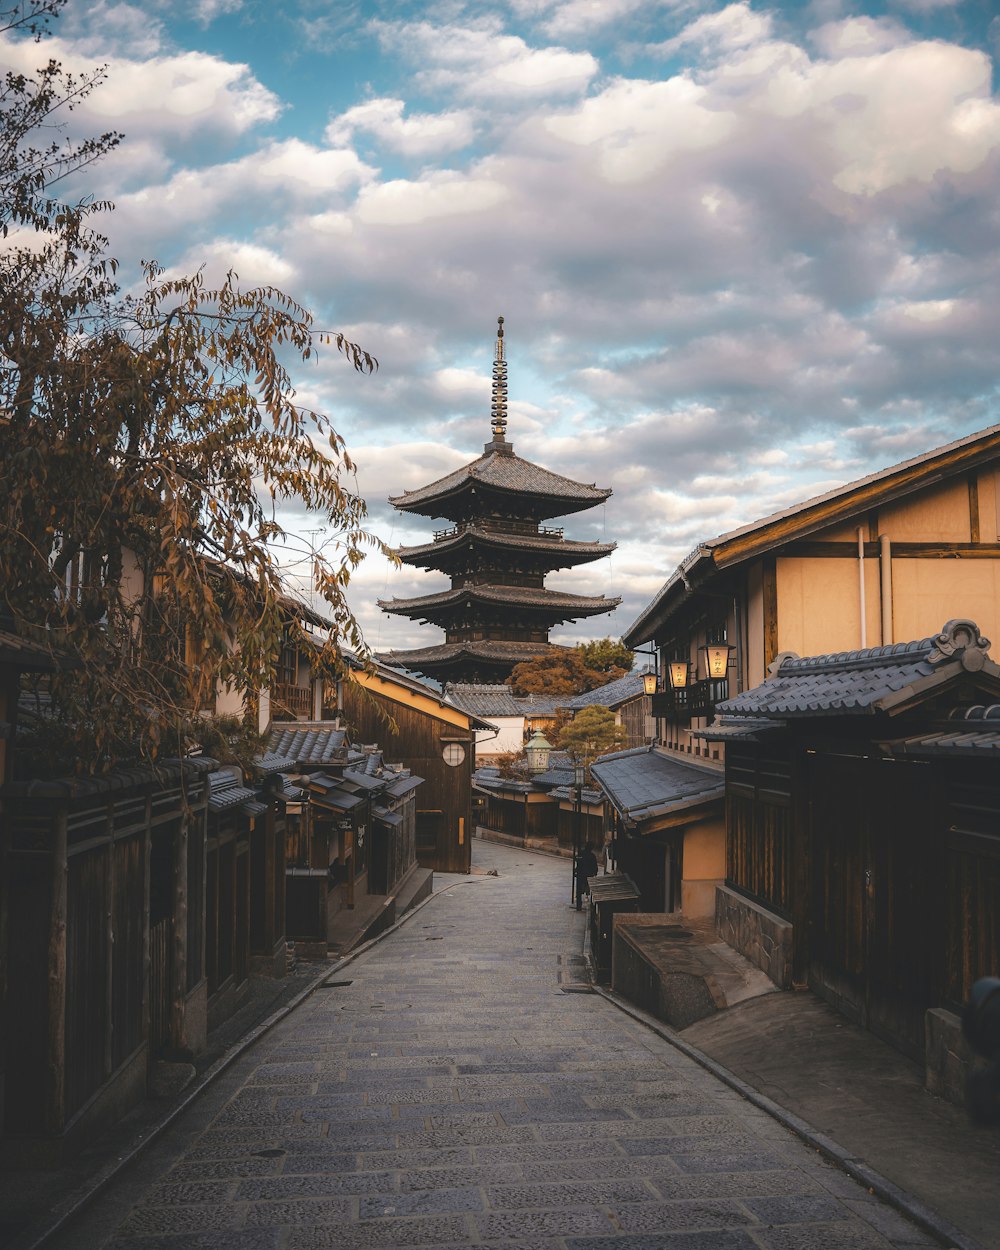 Una calle estrecha con una pagoda al fondo